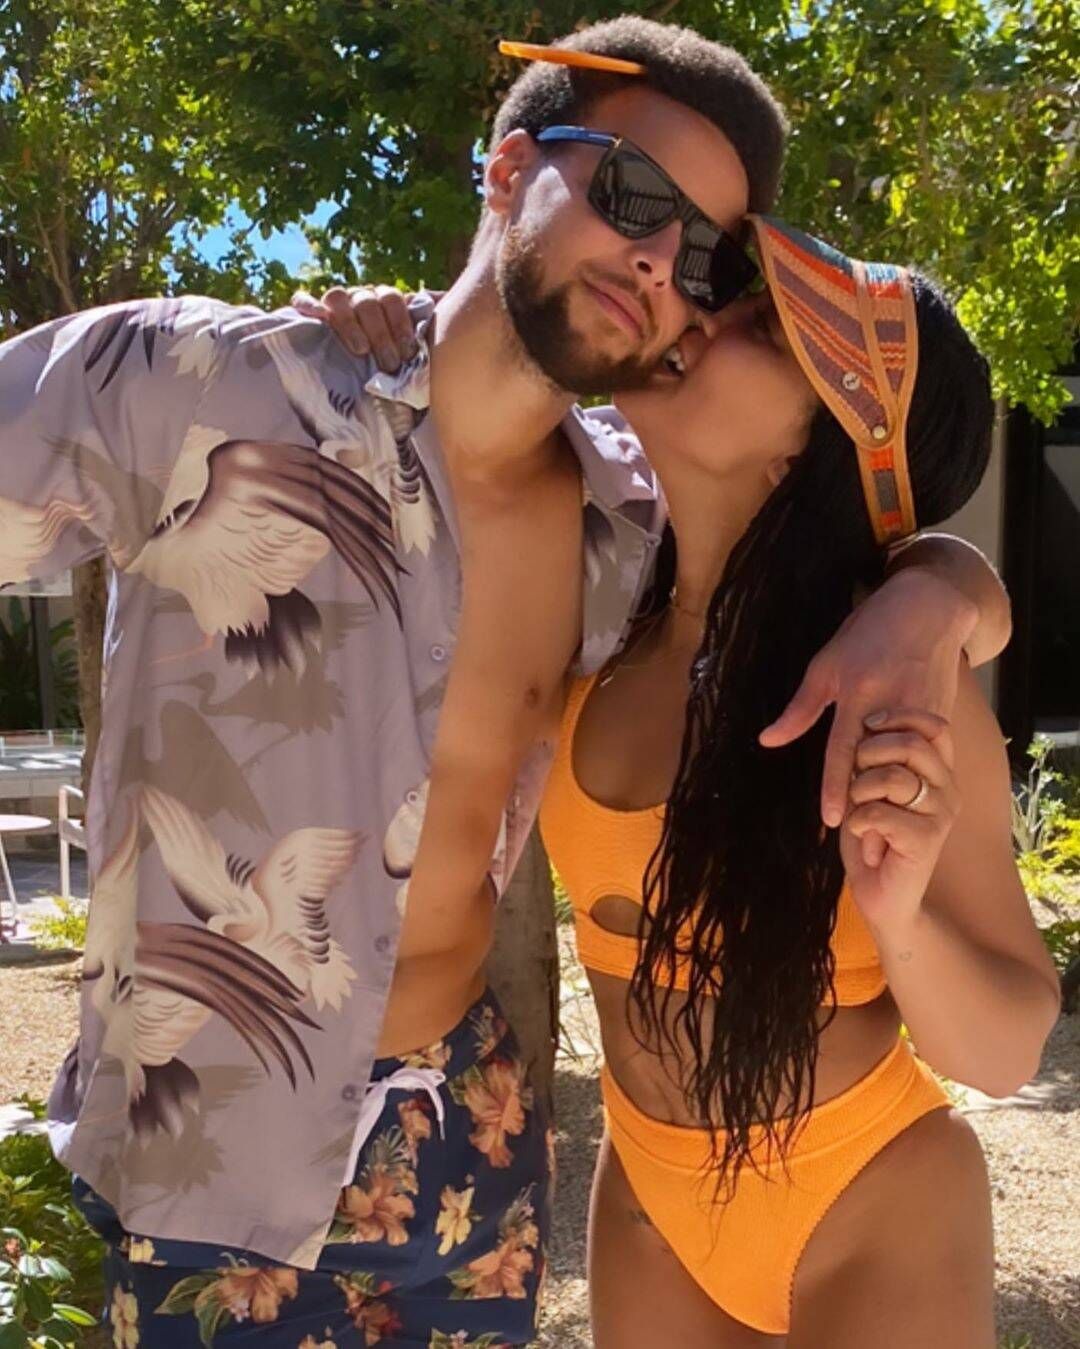 Steph and Ayesha in swimwear kiss